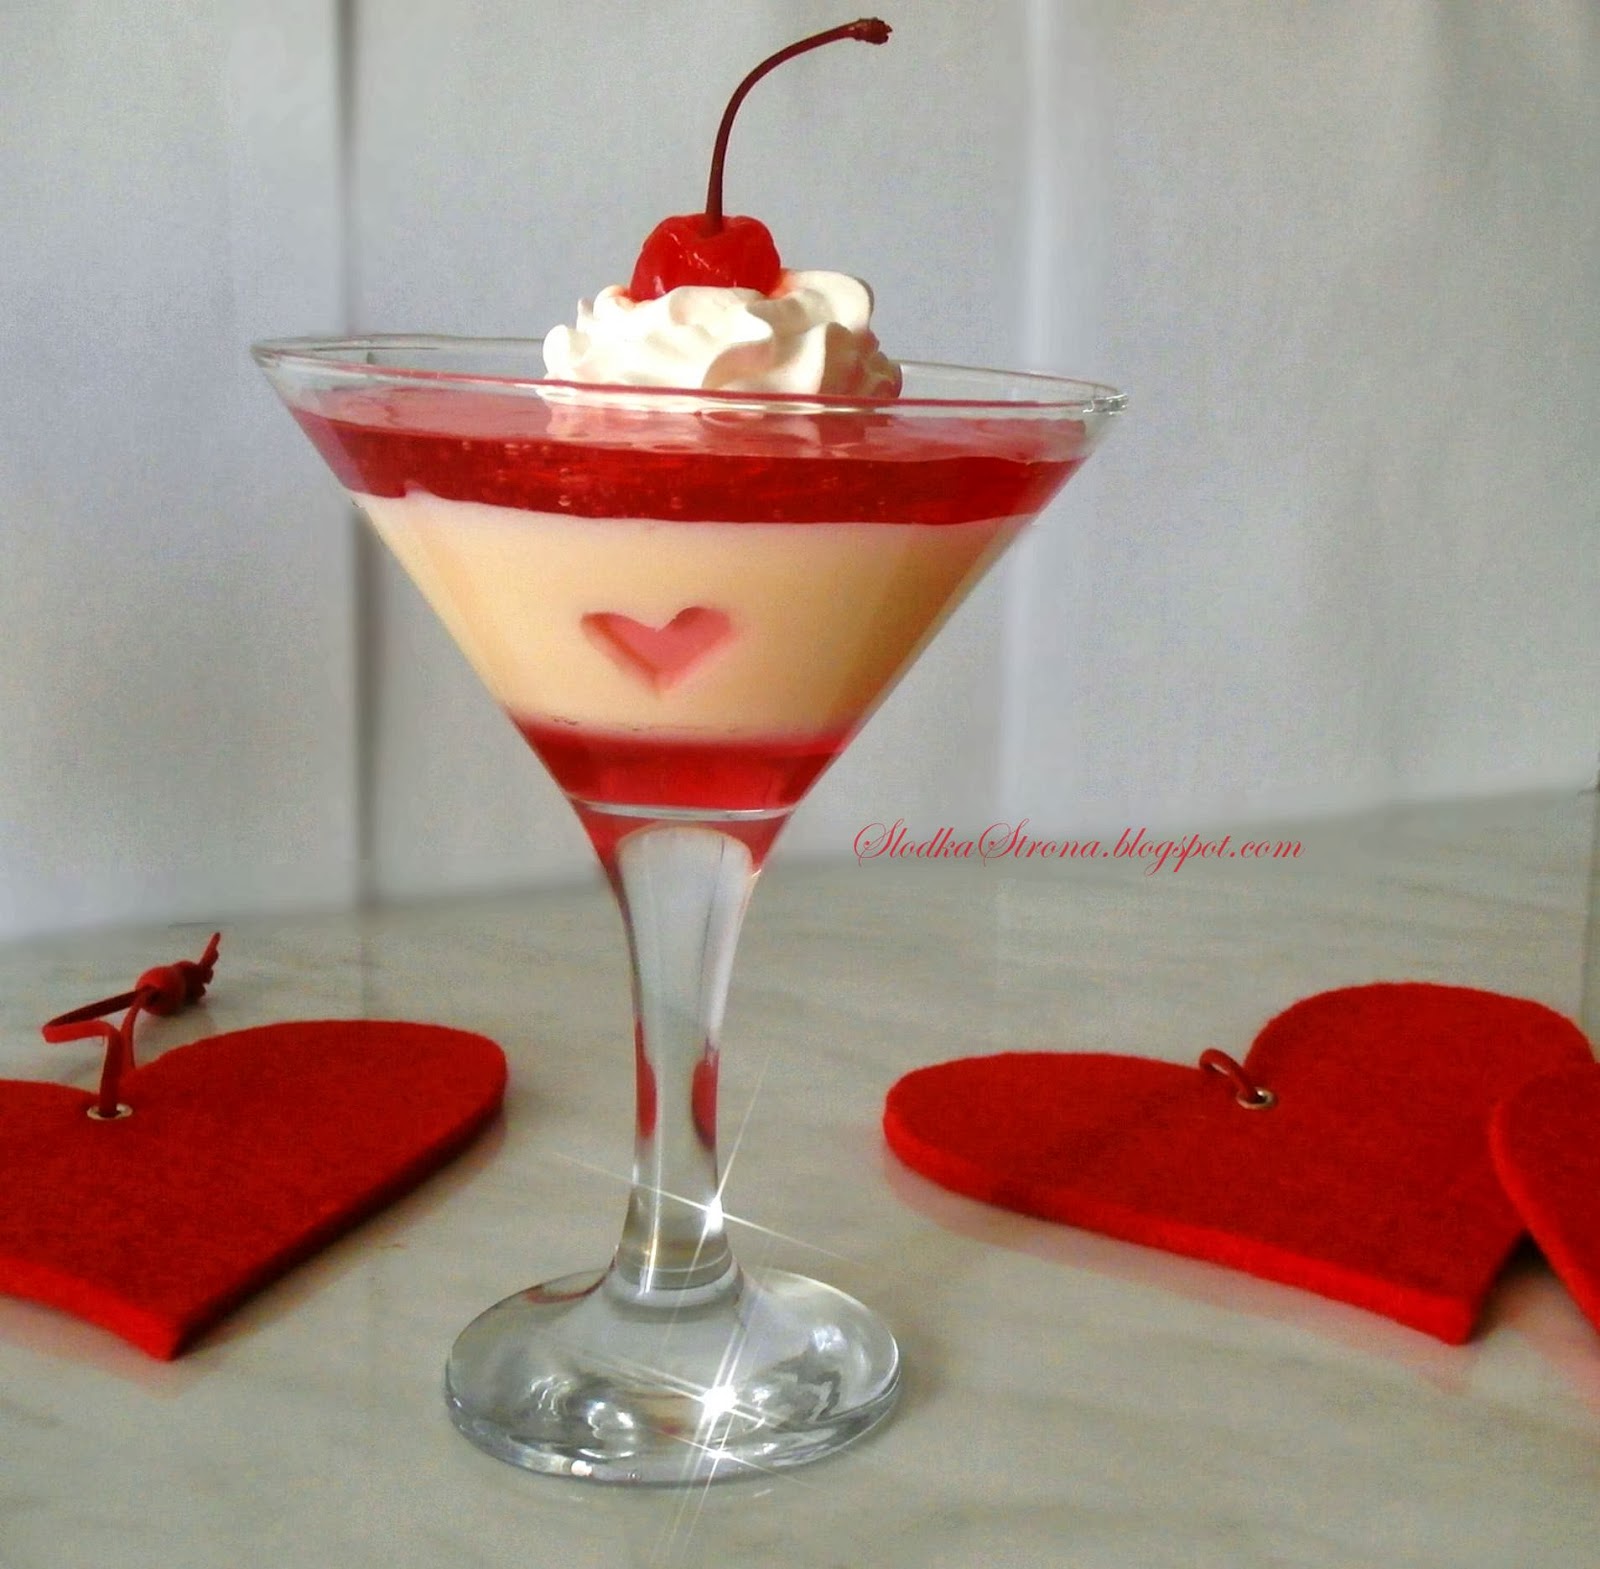 Deser z Mlekiem Skondensowanym na Walentynki - Przepis - Słodka Strona